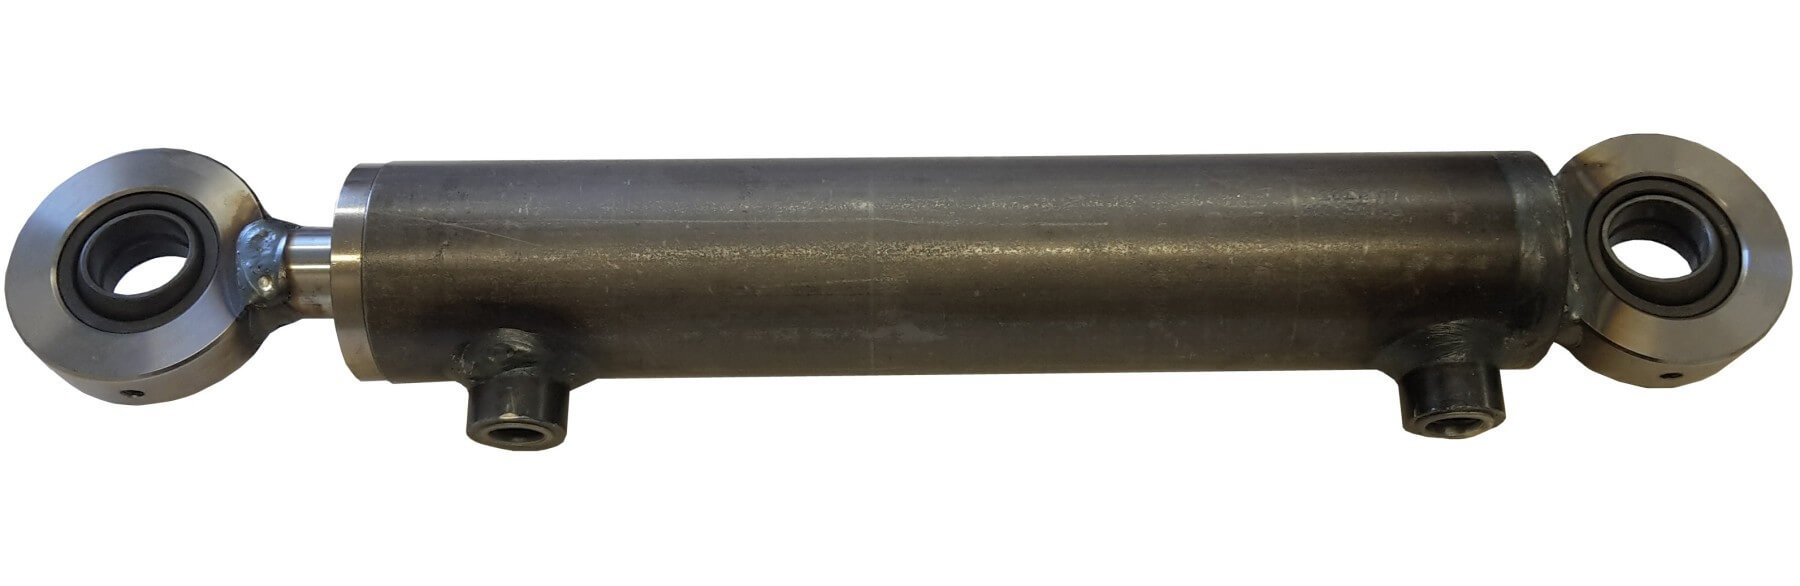 Hydraulisylinteri CL 50. 30. 600 GE - Kailatec Oy Verkkokauppa